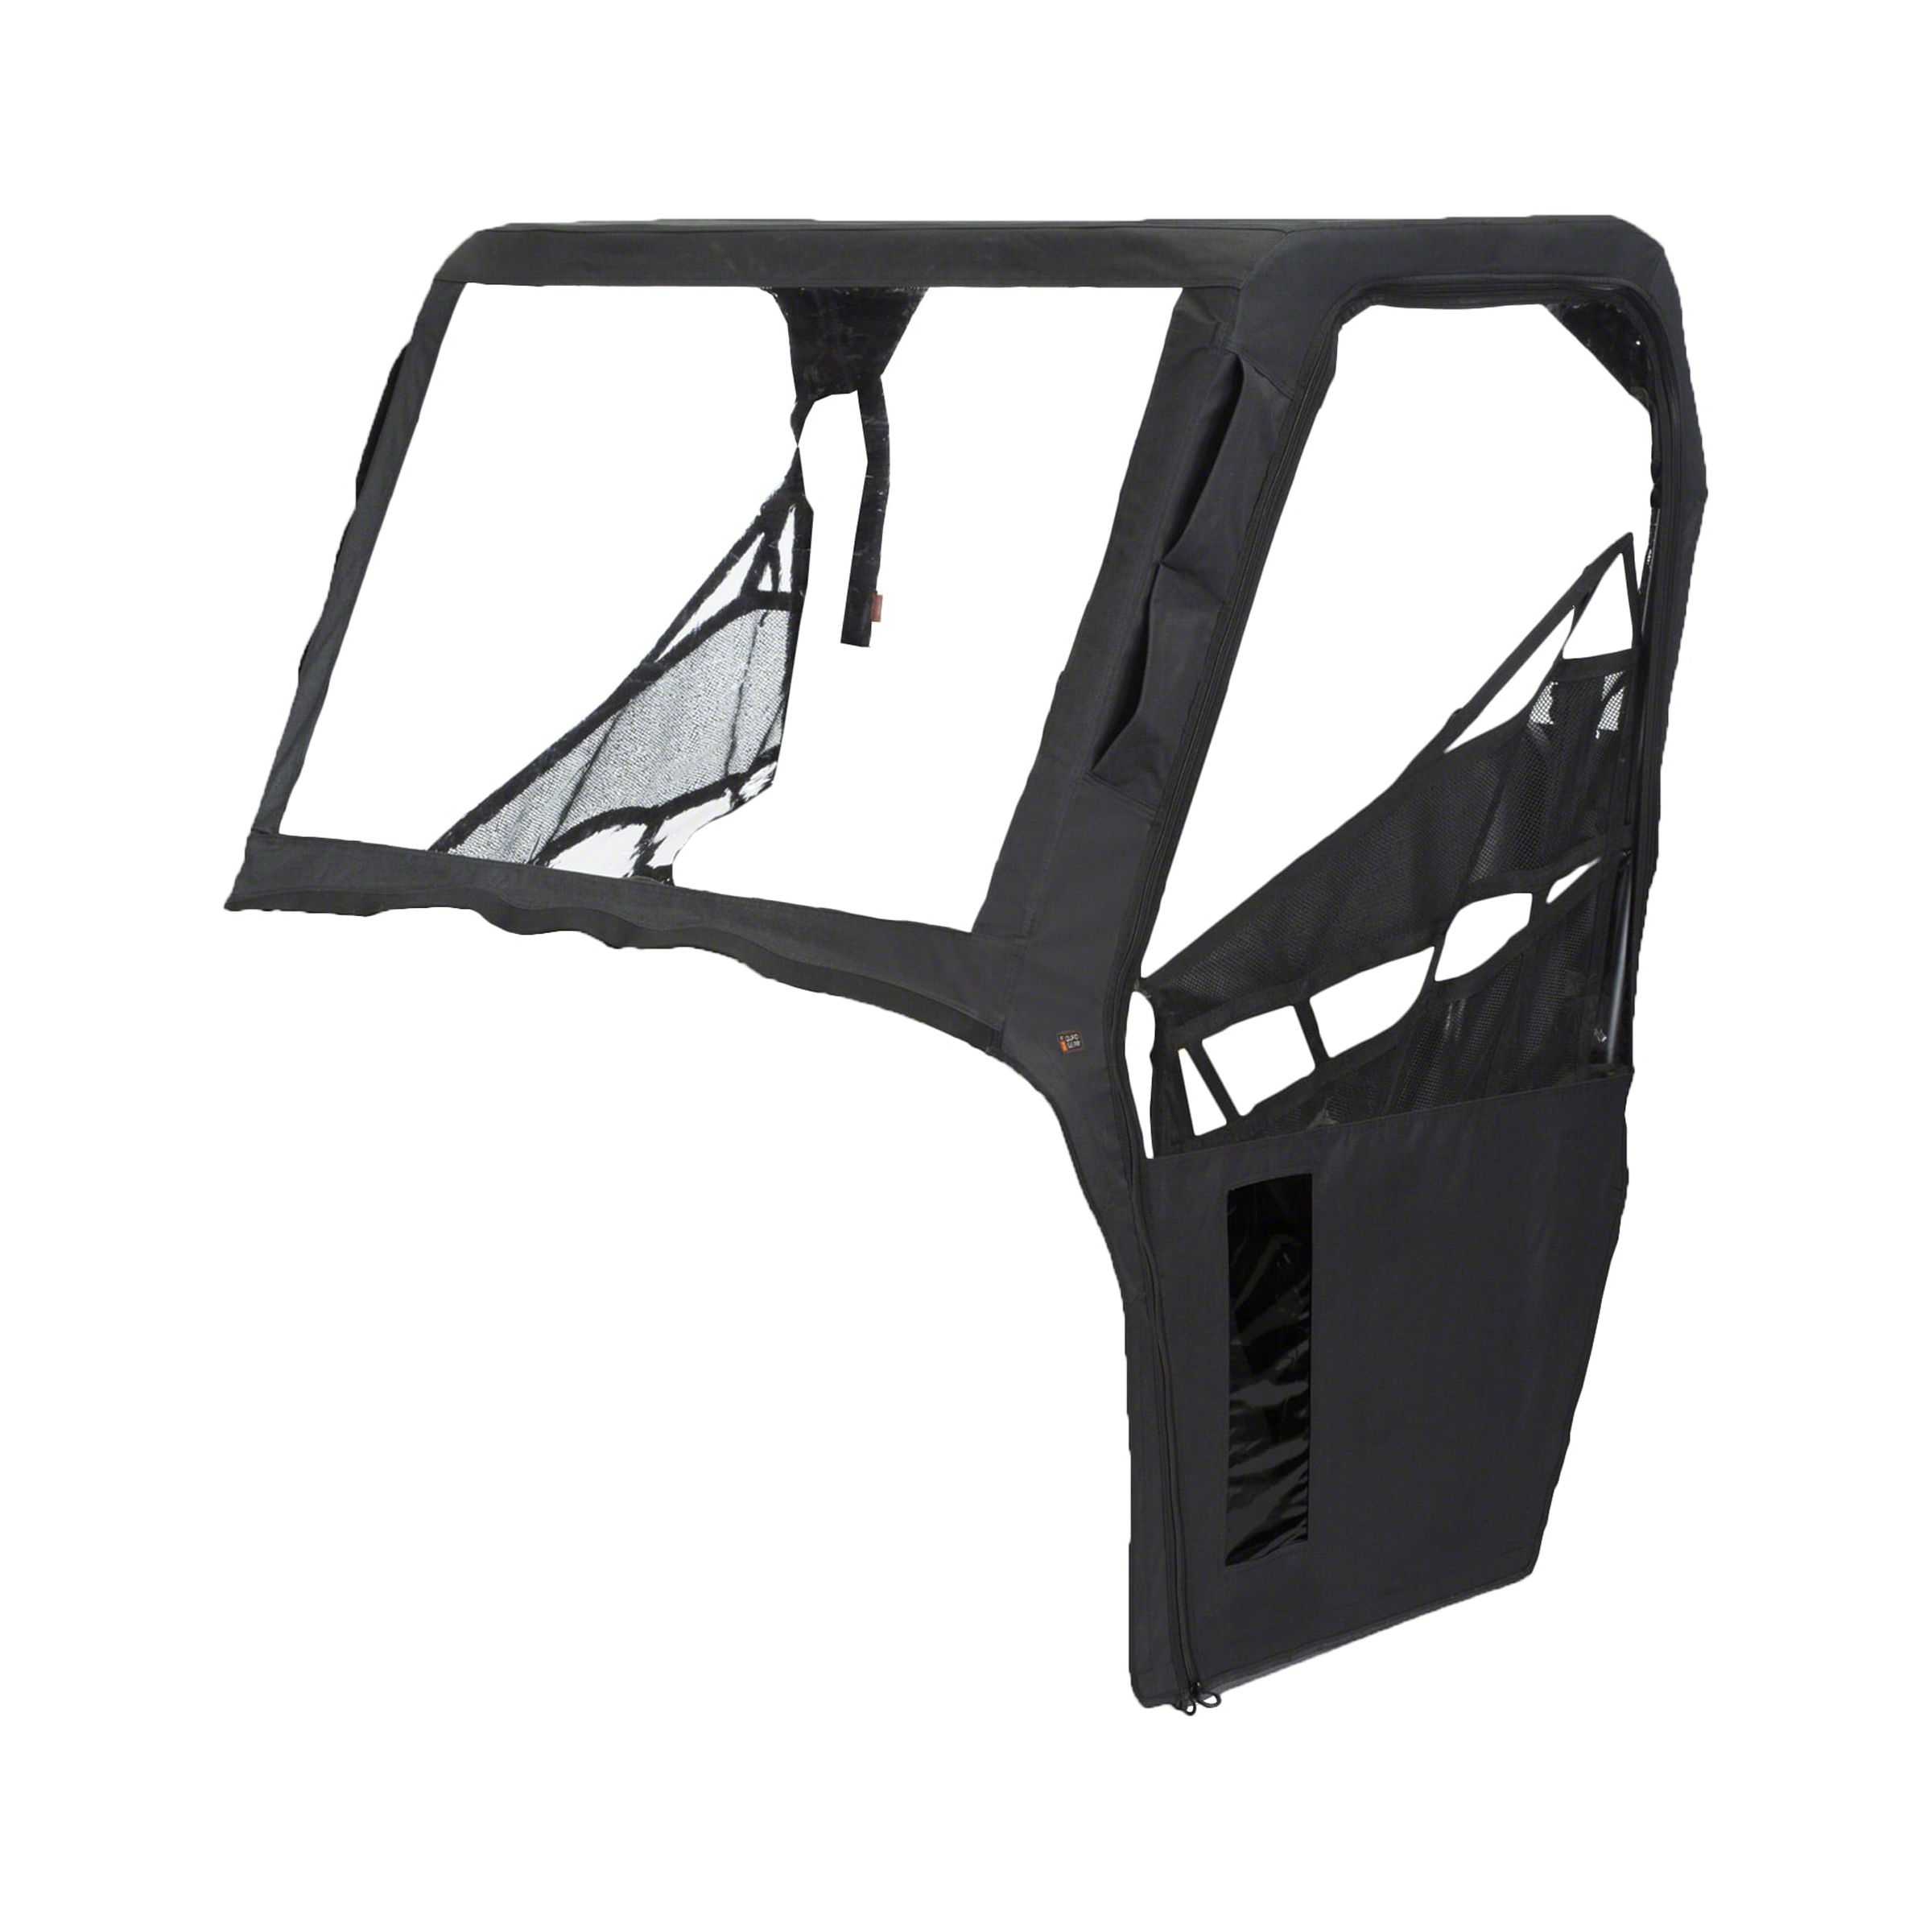 Classic Accessories QuadGear UTV Cab Enclosure, Fits Kawasaki Teryx 750 F1 (2015 models and older), Black - image 5 of 9